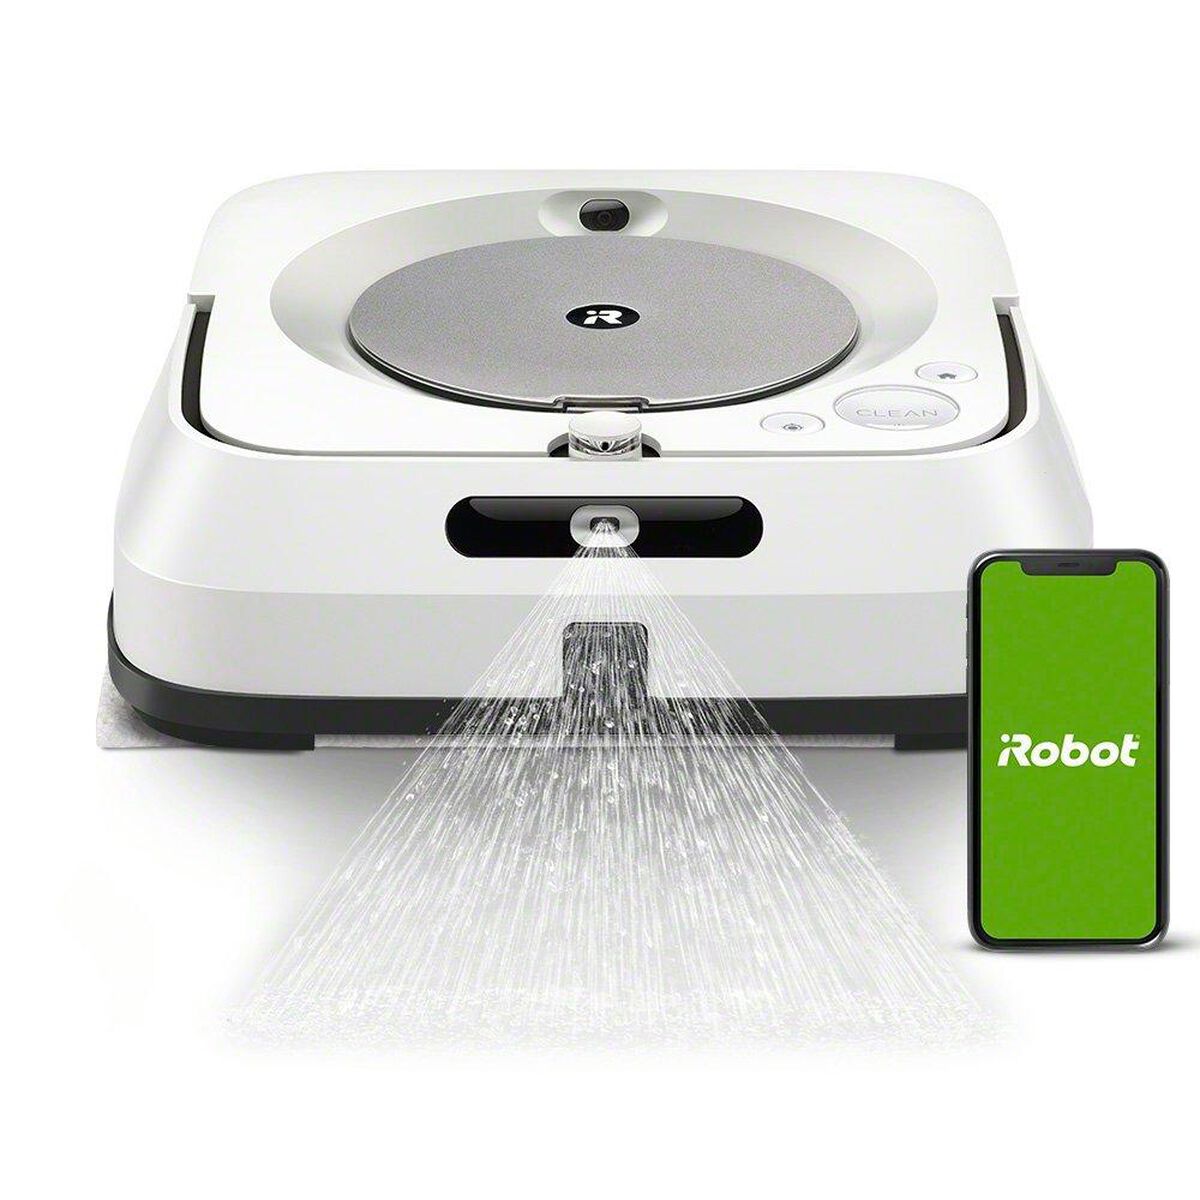 Robot laveur Braava jet™ m6 d’iRobot avec connexion Wi-Fi®, , large image number 0